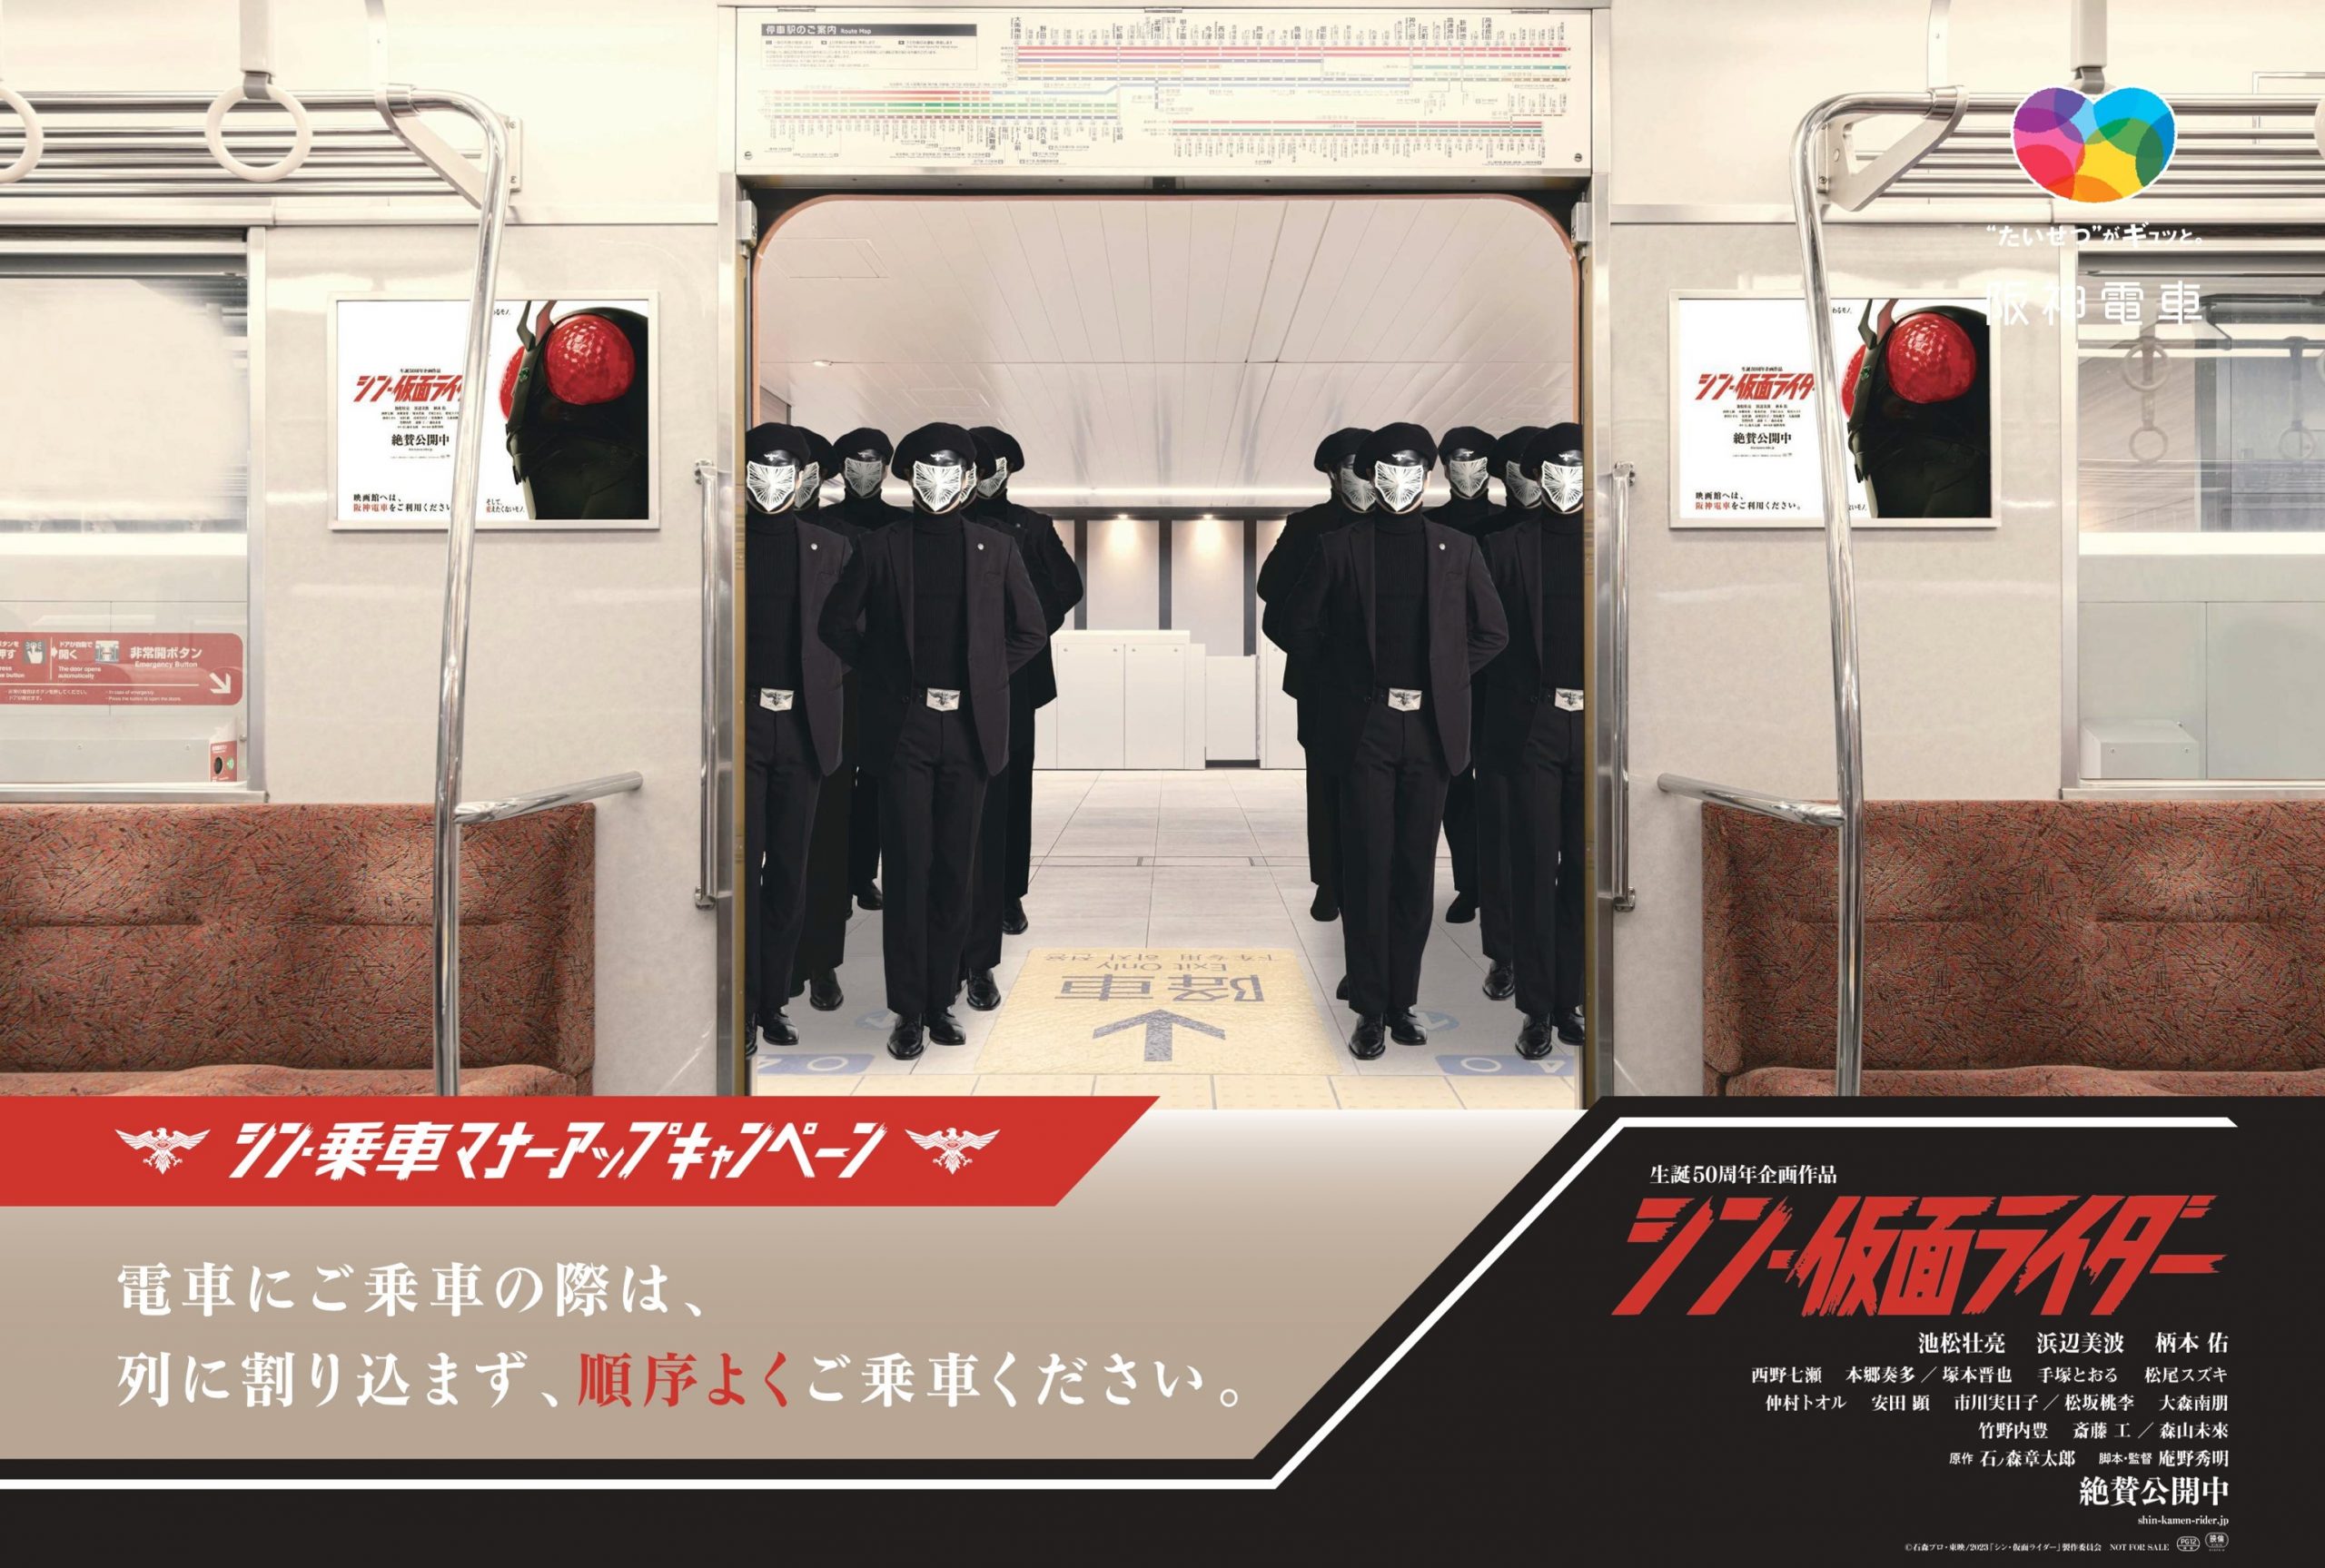 『シン・仮面ライダー』×阪神電車 ビジュアルタイアップを実施中